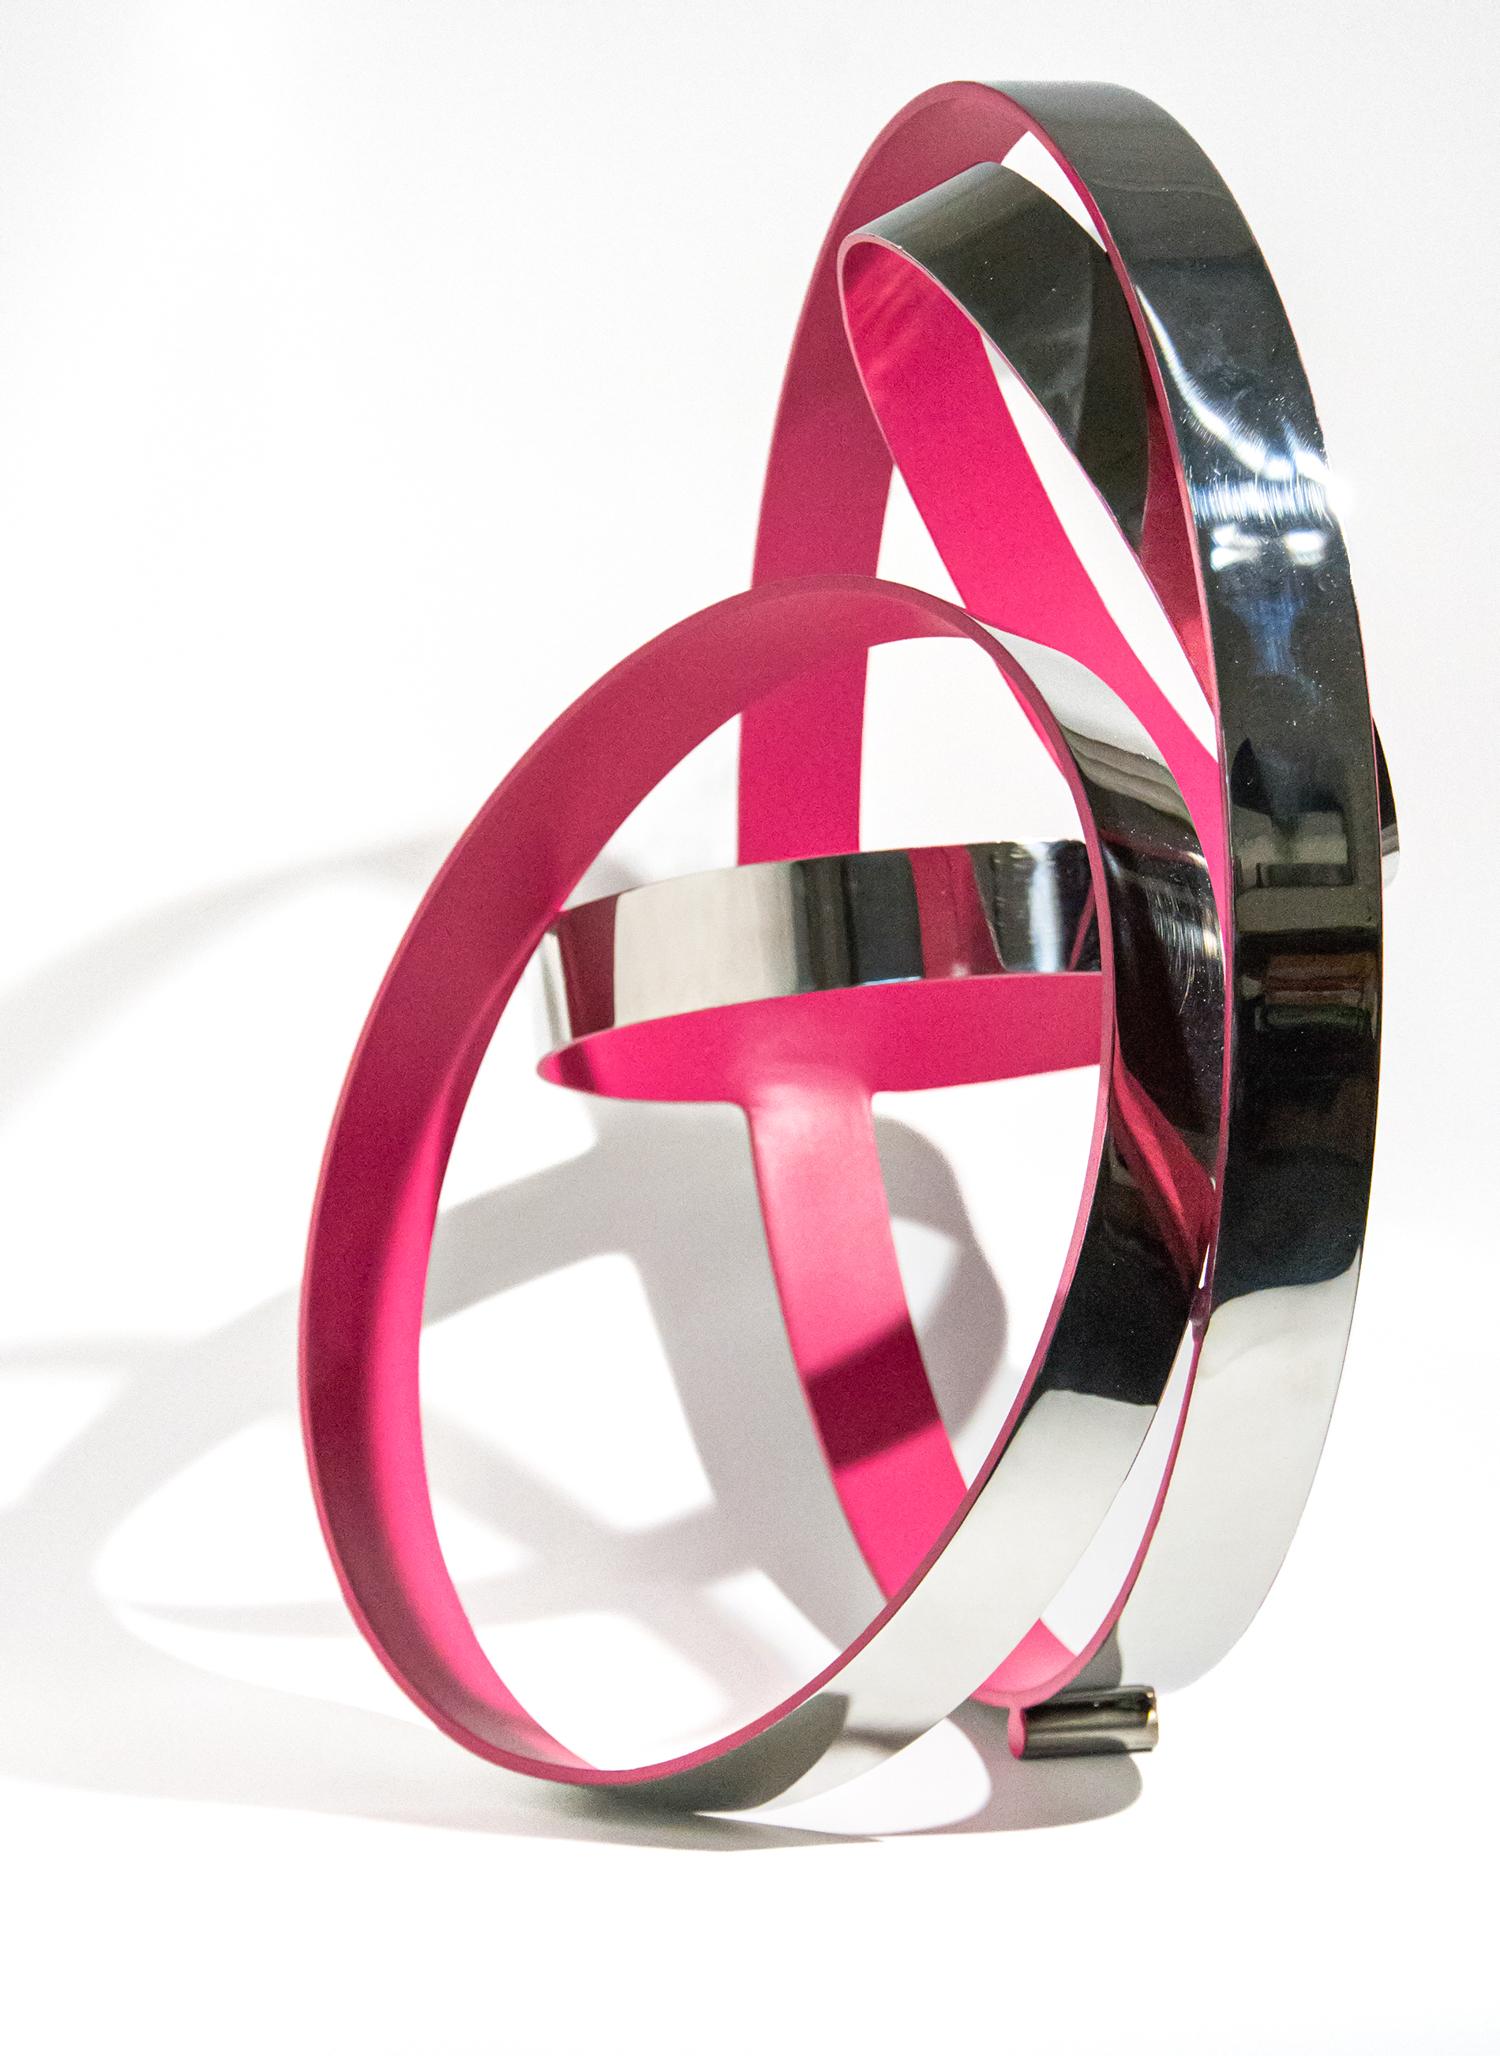 Quatre anneaux Temps rose zéro - sculpture géométrique abstraite en acier inoxydable - Contemporain Sculpture par Philippe Pallafray